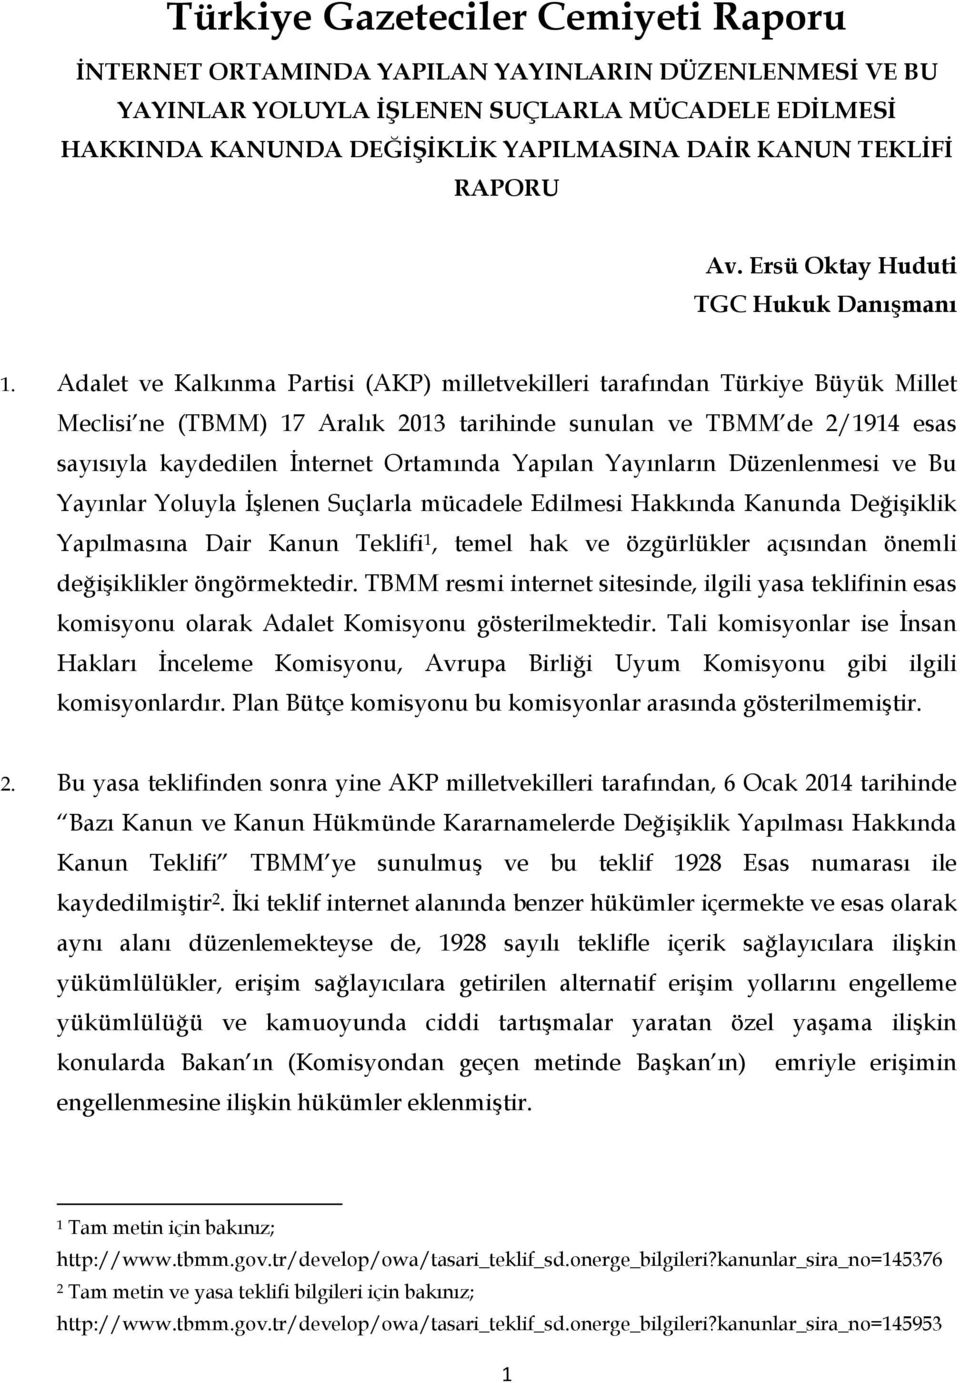 Adalet ve Kalkınma Partisi (AKP) milletvekilleri tarafından Türkiye Büyük Millet Meclisi ne (TBMM) 17 Aralık 2013 tarihinde sunulan ve TBMM de 2/1914 esas sayısıyla kaydedilen İnternet Ortamında